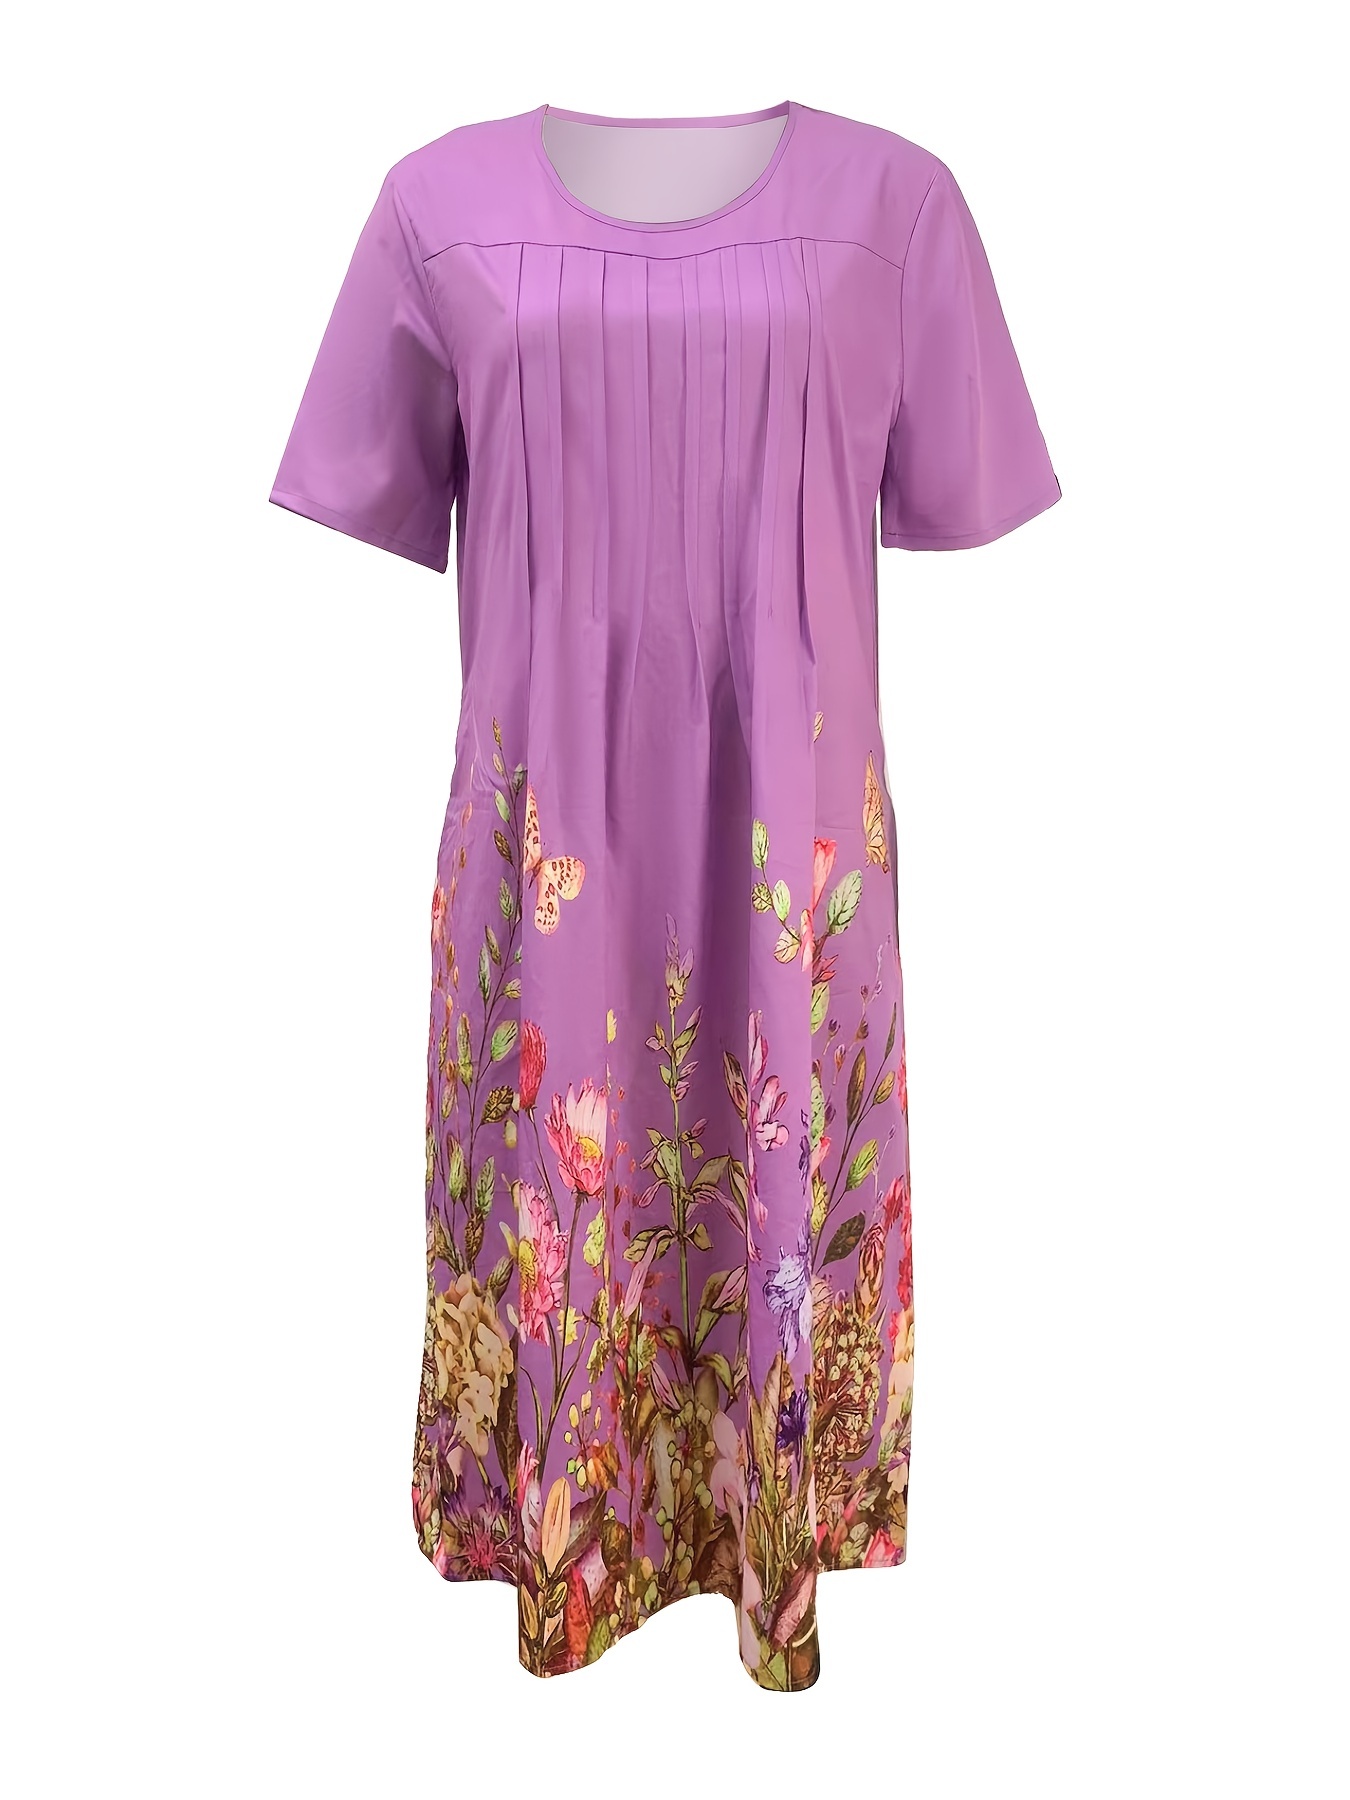 Çiçek Desenli Pilili Ön Elbise, Rahat Kısa Kollu Çift Cep Elbise, Kadın Giyim